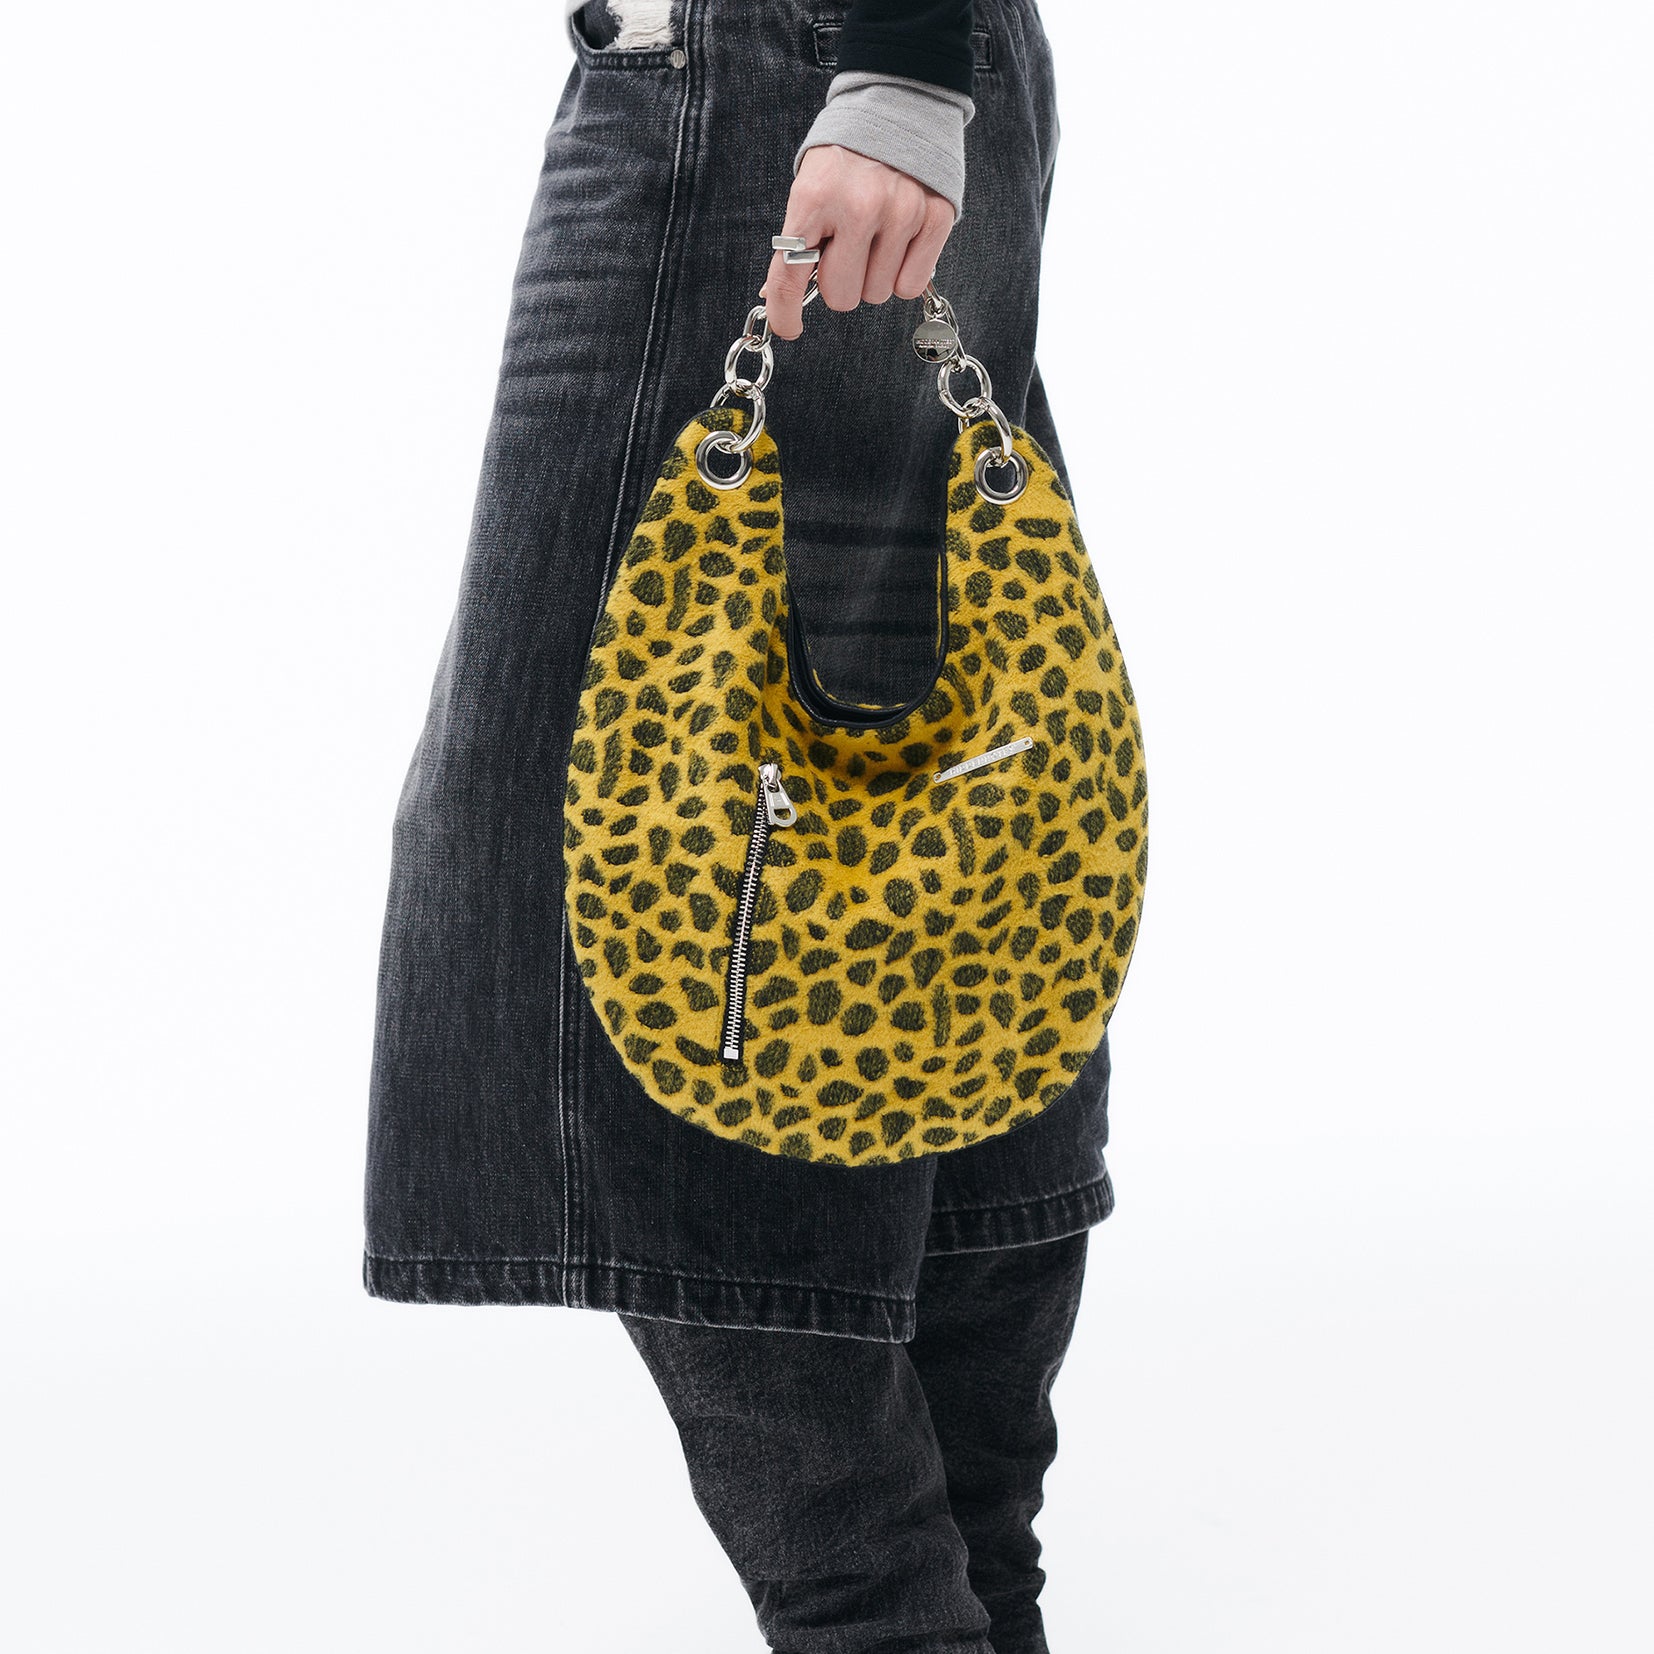 Leopard shoulder/hand shell bag